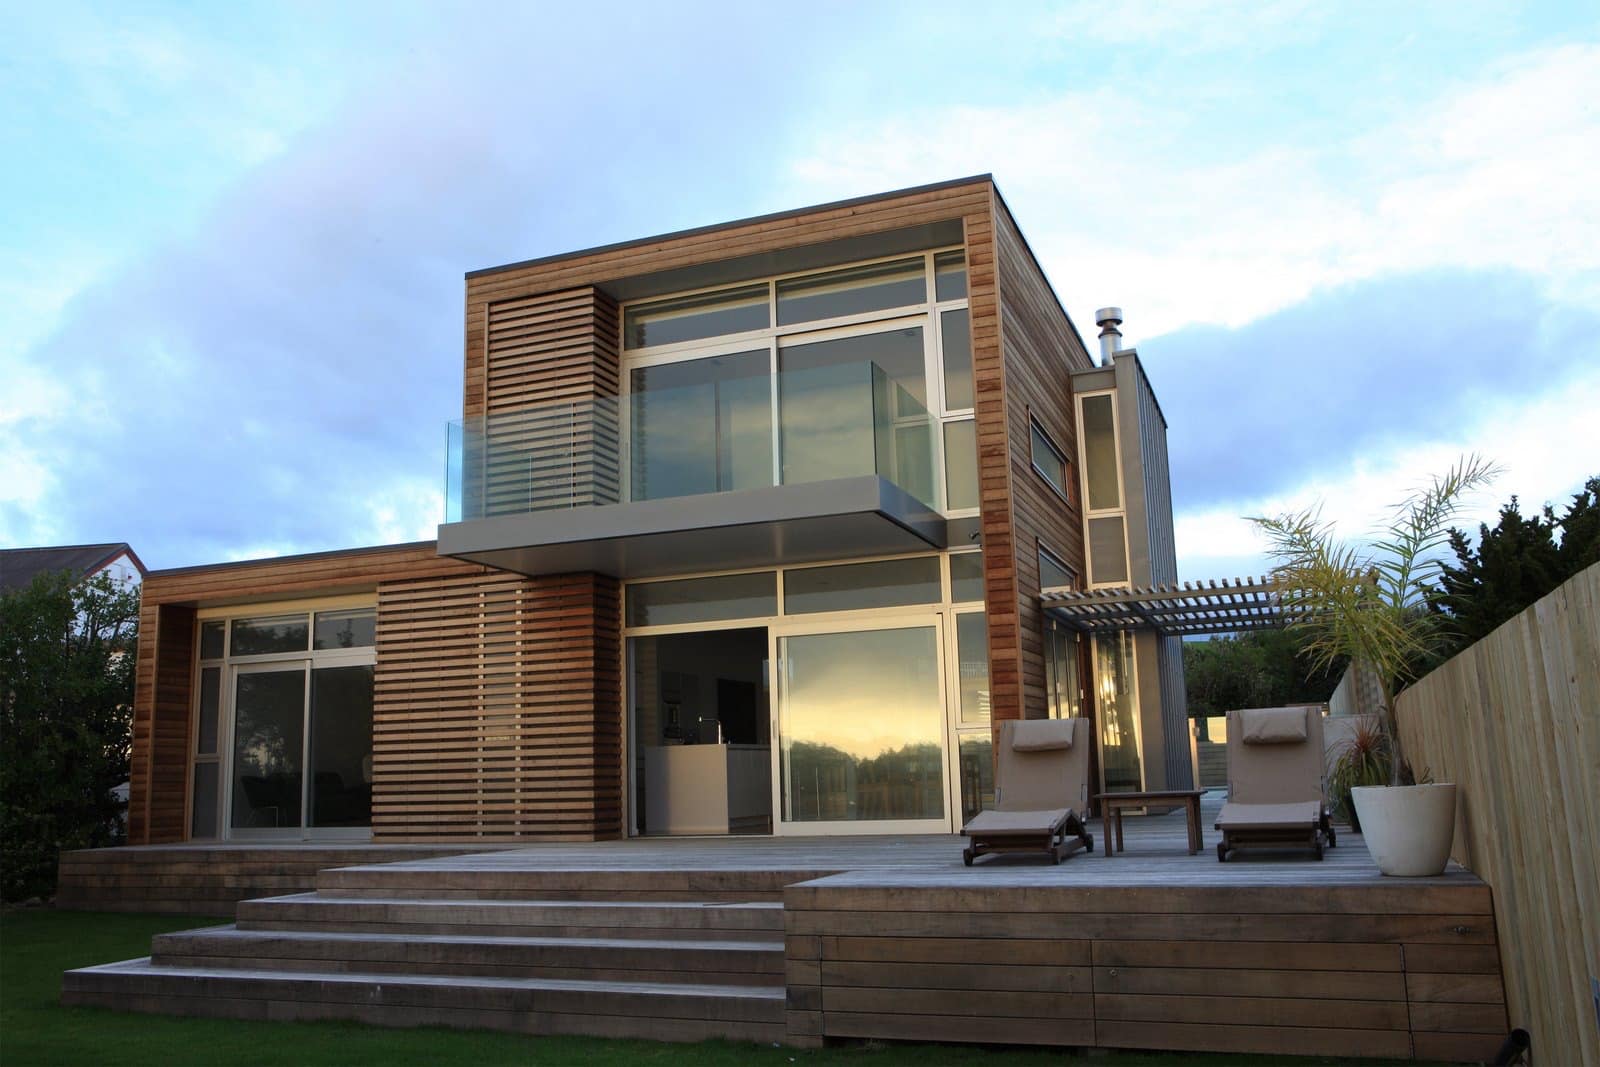 Rumah modern dan minimalis dengan warna hangat - Thegorbalsla